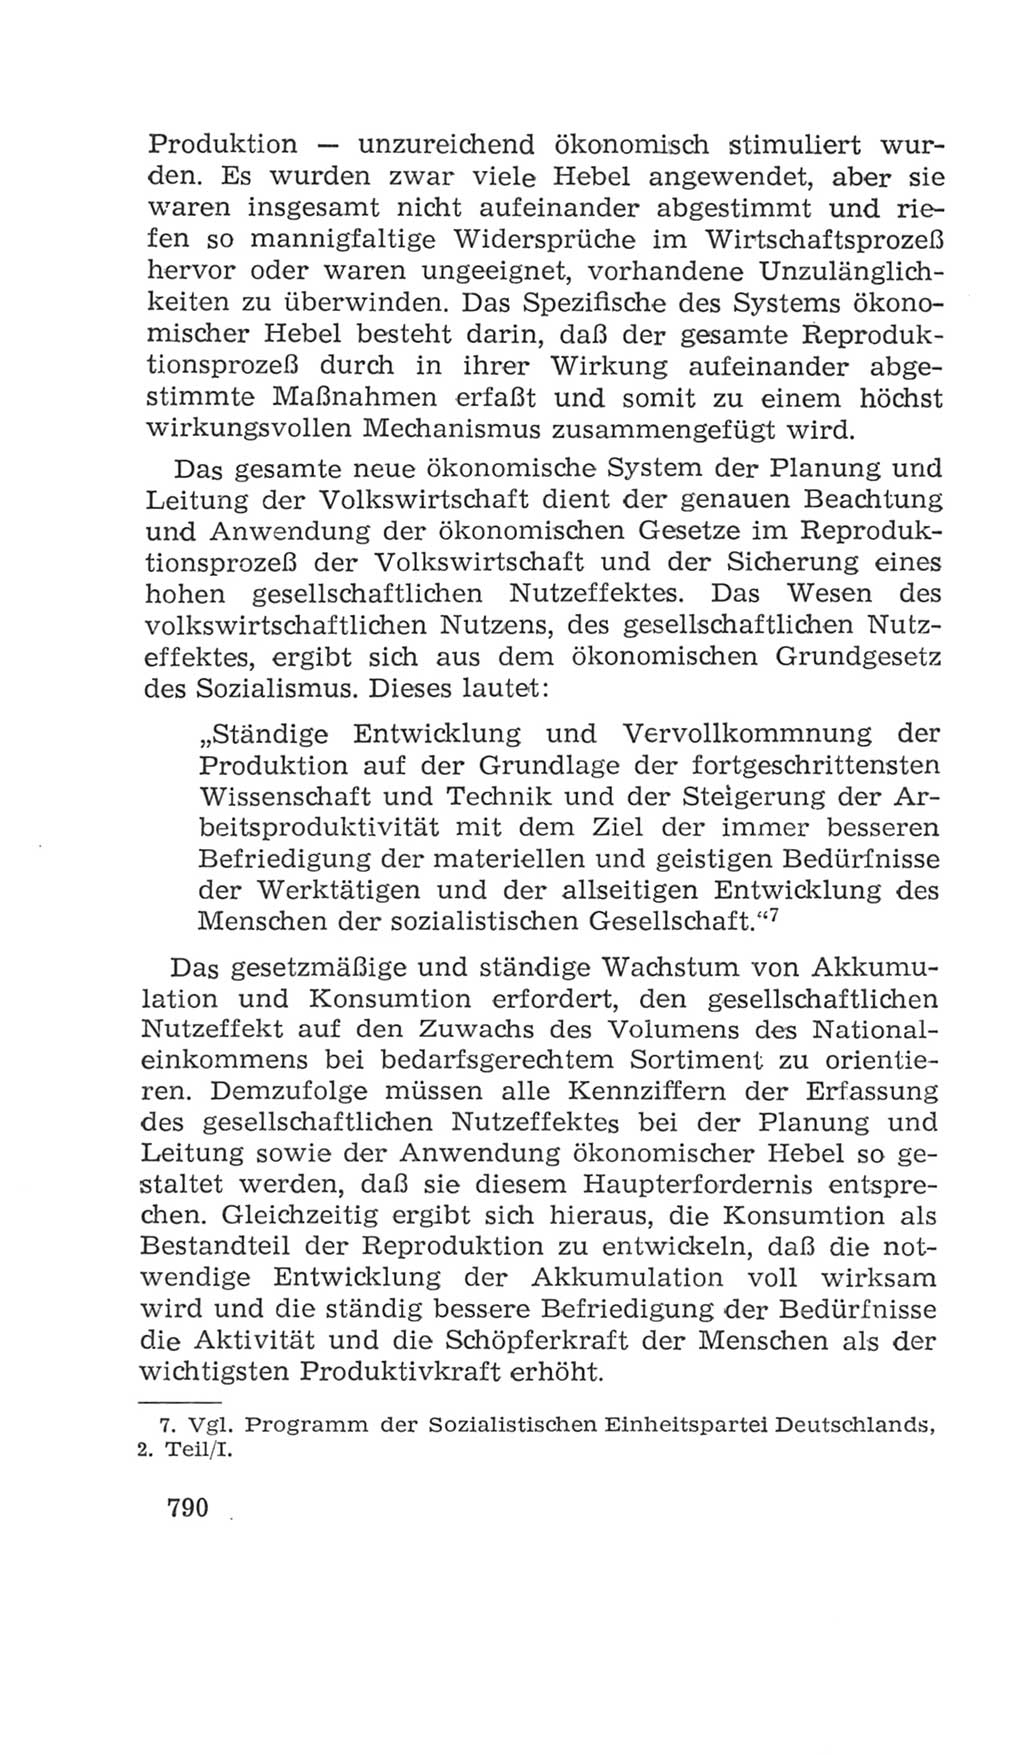 Volkskammer (VK) der Deutschen Demokratischen Republik (DDR), 4. Wahlperiode 1963-1967, Seite 790 (VK. DDR 4. WP. 1963-1967, S. 790)